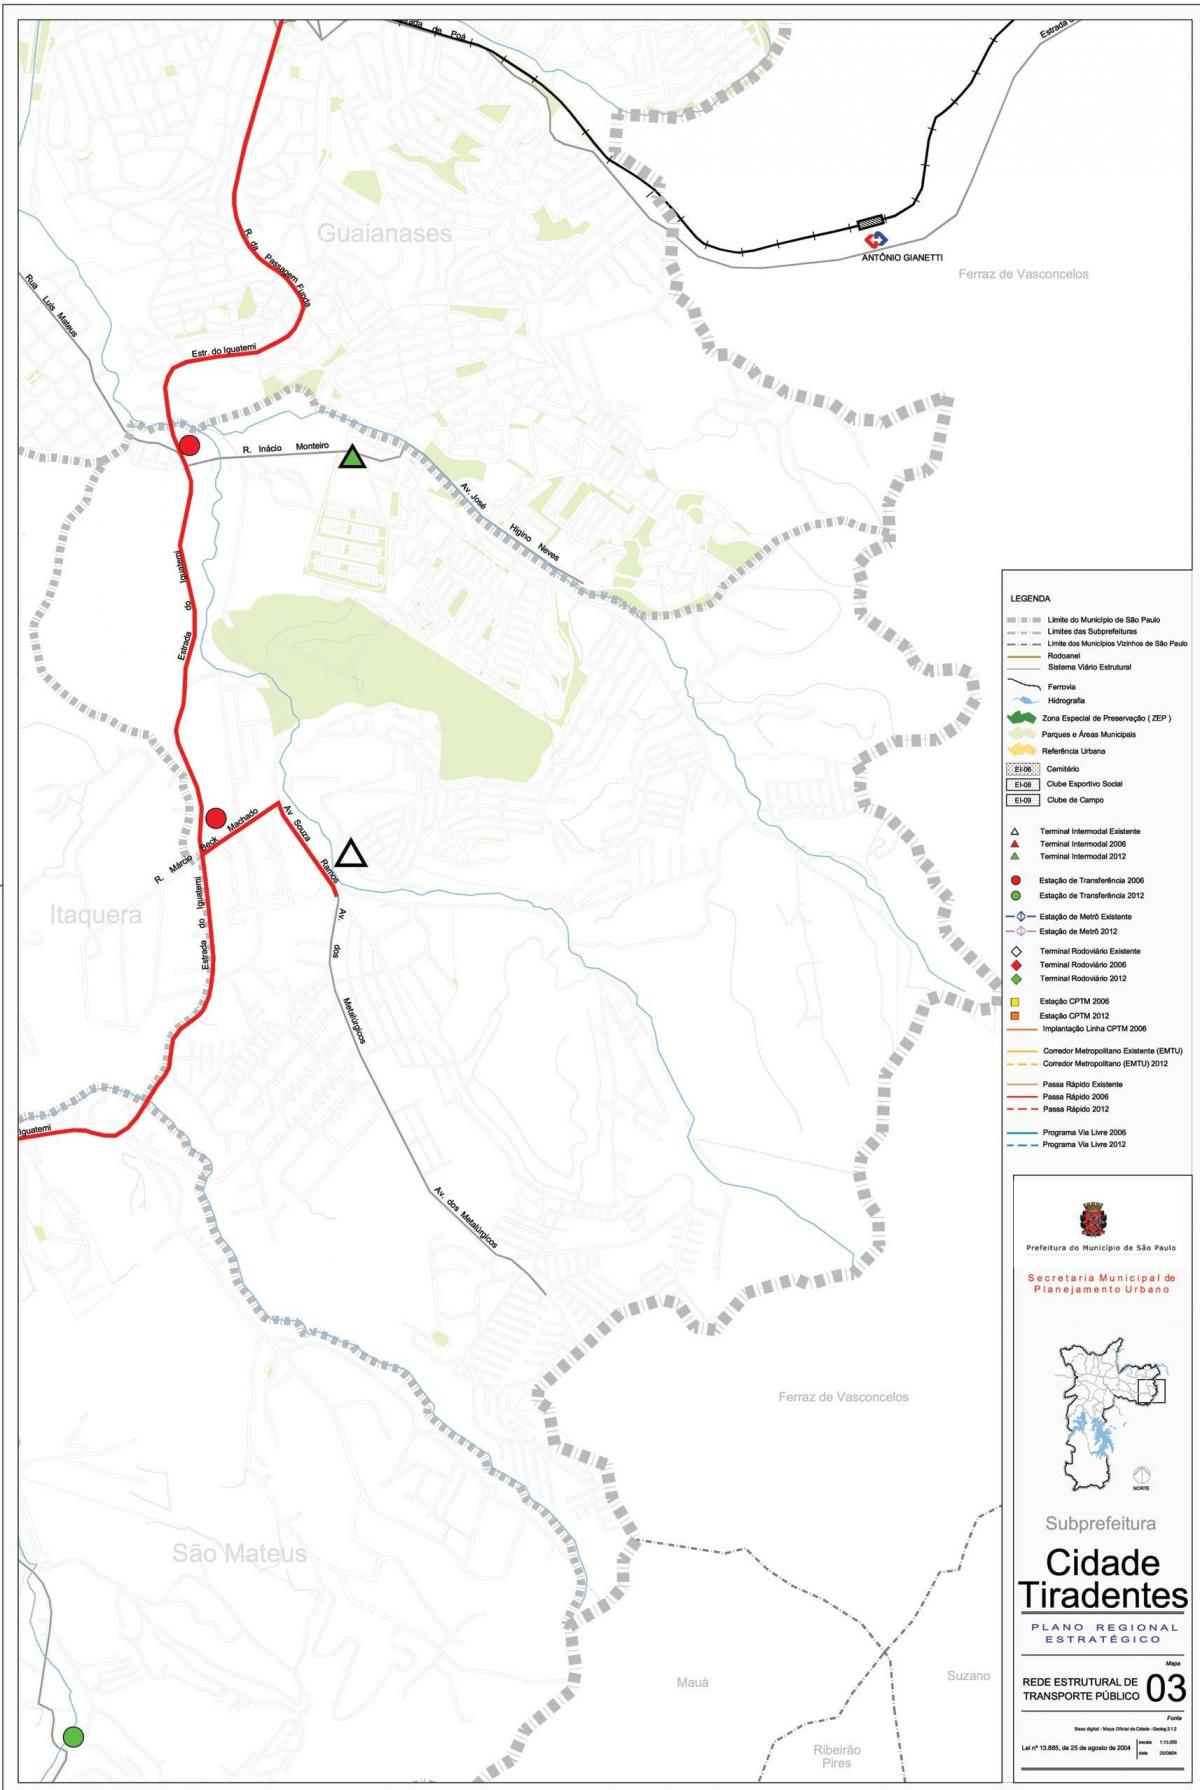 नक्शे के सिडेड तिरदेन्टेस साओ पाउलो - सार्वजनिक transports